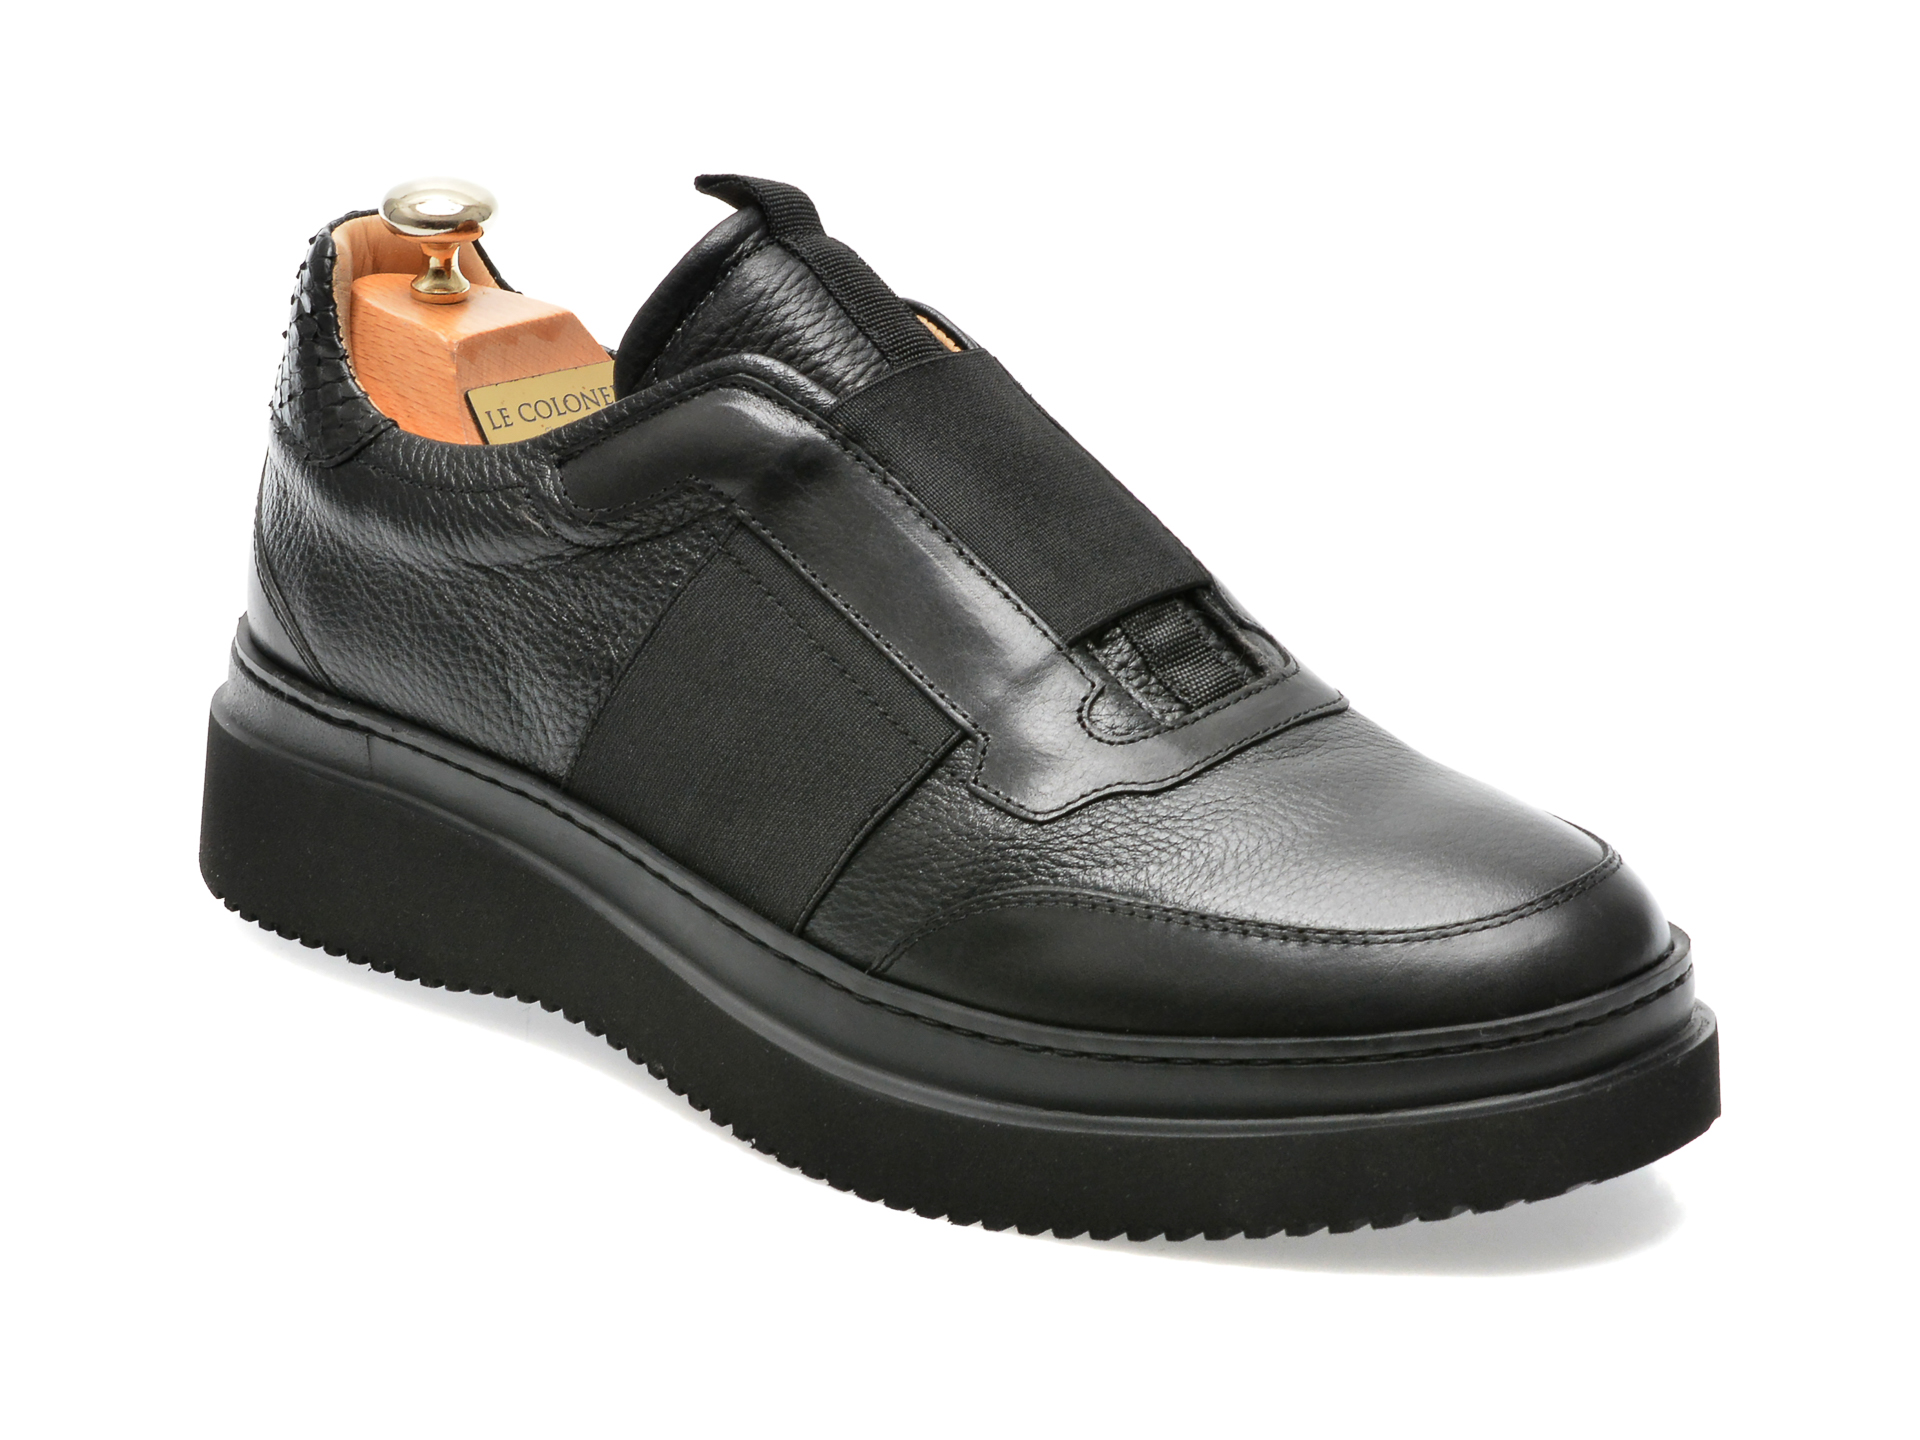 Pantofi LE COLONEL negri, 64833, din piele naturala barbati 2023-03-24